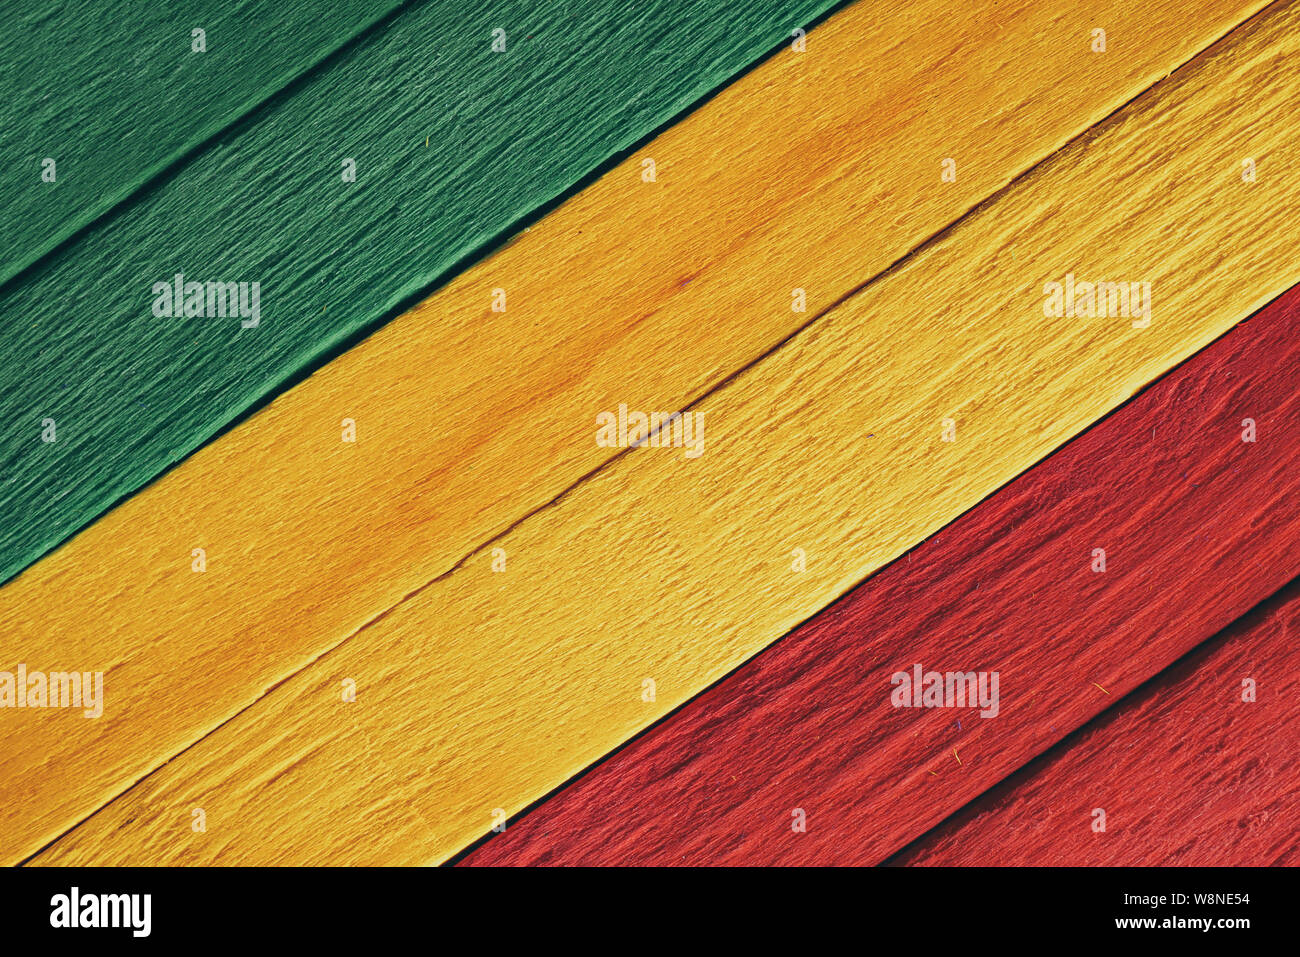 Hintergrund Holz grün, gelb, rot alten Retro Vintage Style, Rasta reggae Flagge Stockfoto